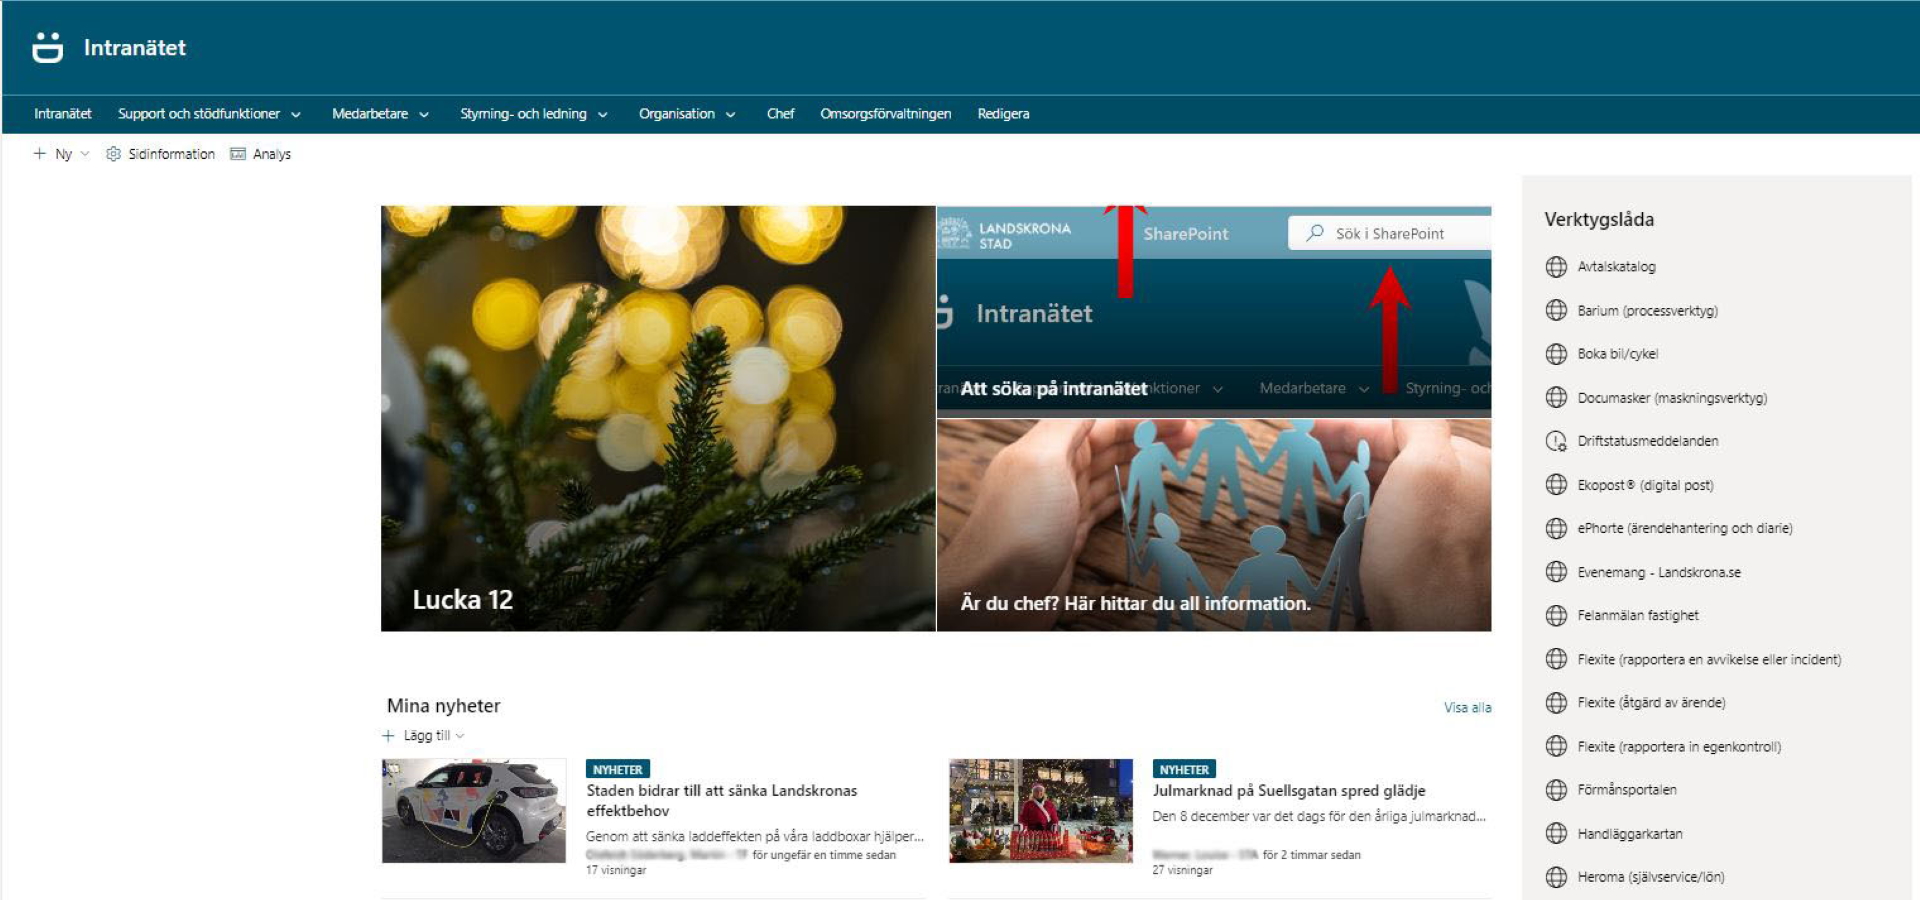 Startpage of Landskrona's intranet